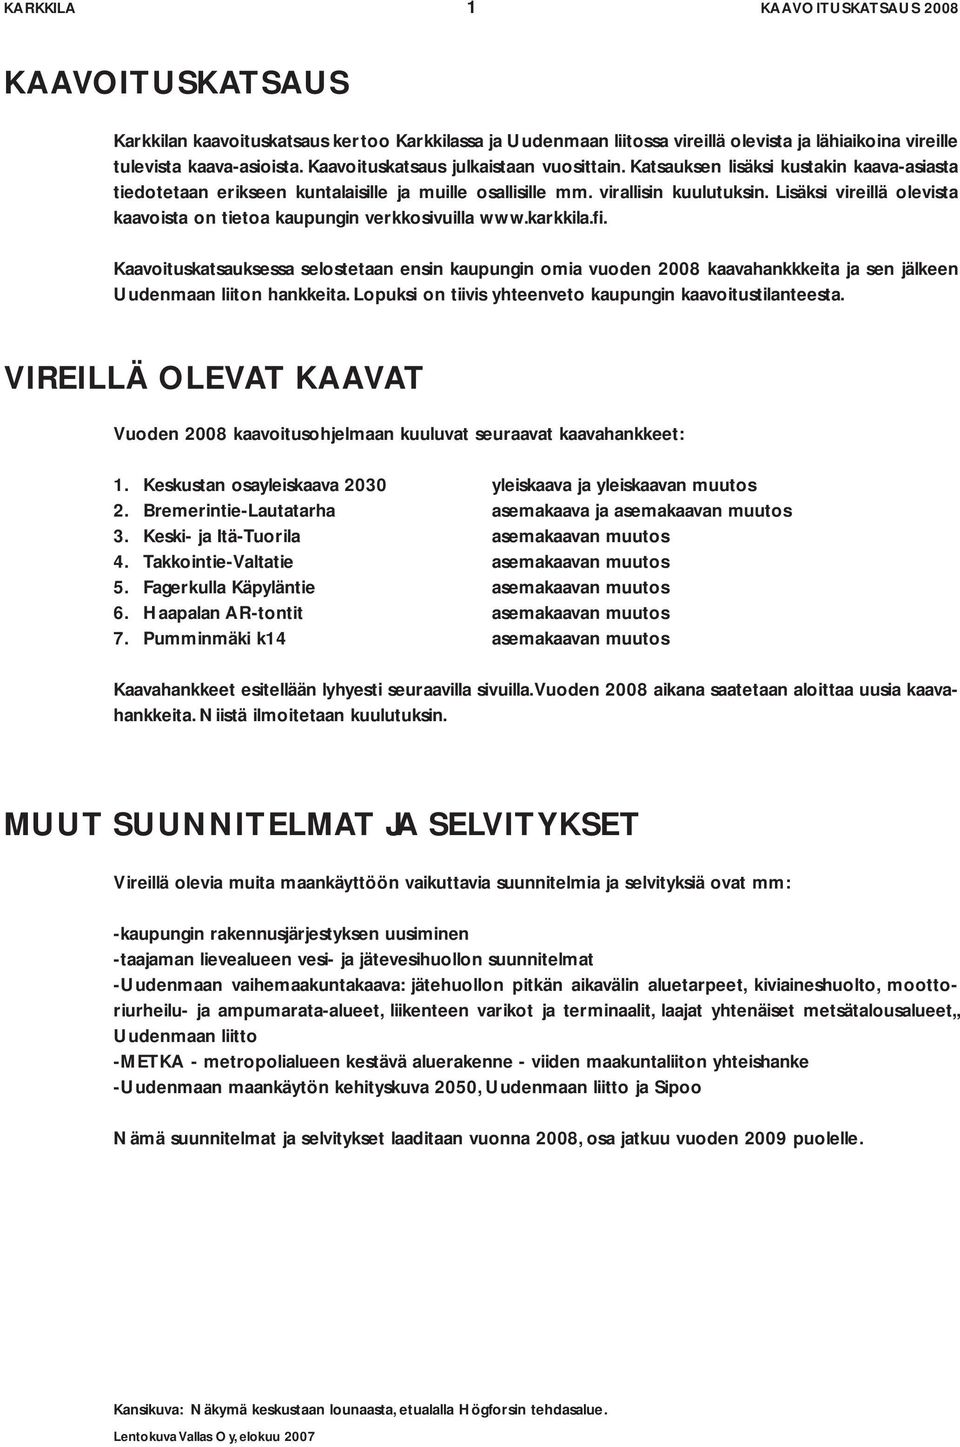 Lisäksi vireillä olevista kaavoista on tietoa kaupungin verkkosivuilla www.karkkila.fi.